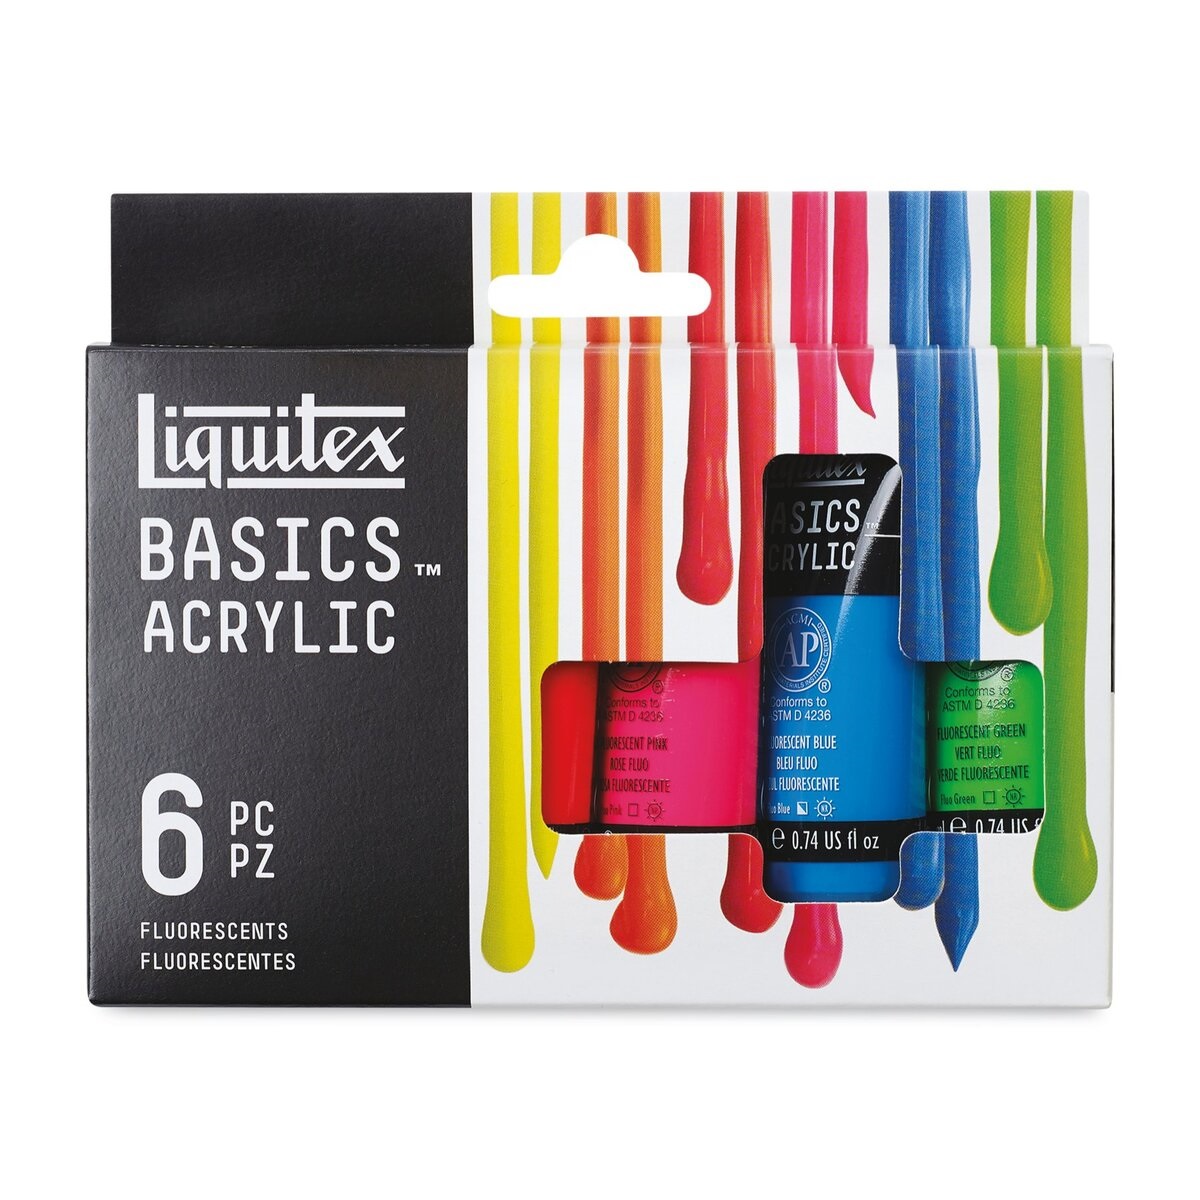 Liquitex Basics Acrylic Paint Tube Set Open Stock - Sitaram Stationers